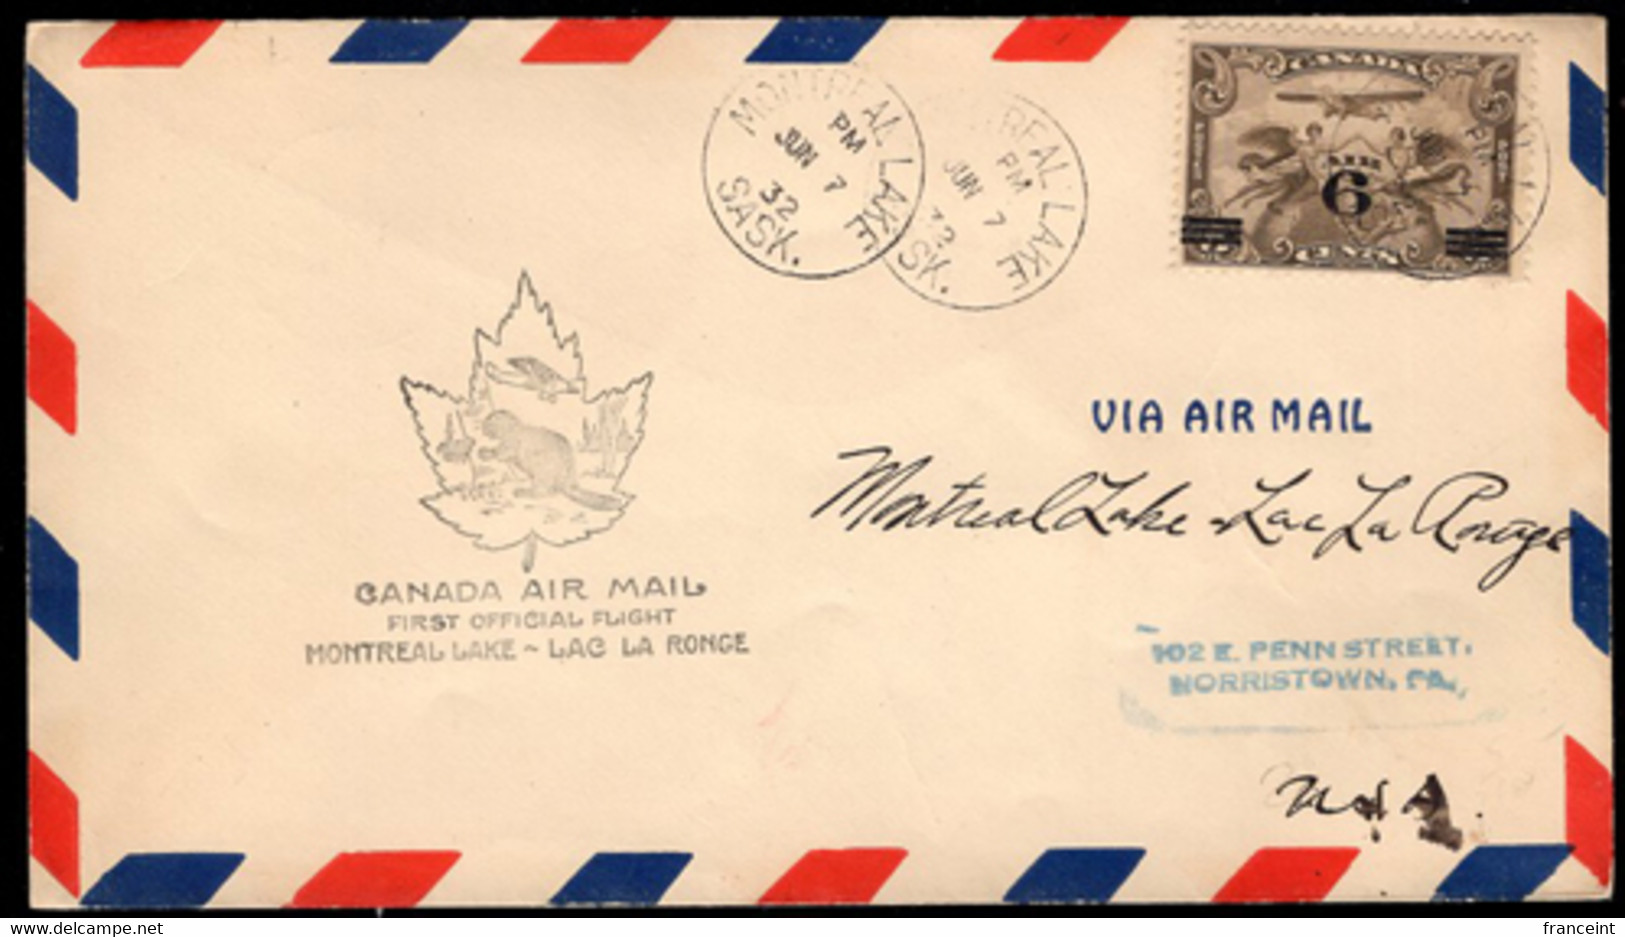 CANADA (1932) Maple Leaf. Beaver. Plane. First Flight Letter Montréal Lake -> Lac La Ronge. - Premiers Vols